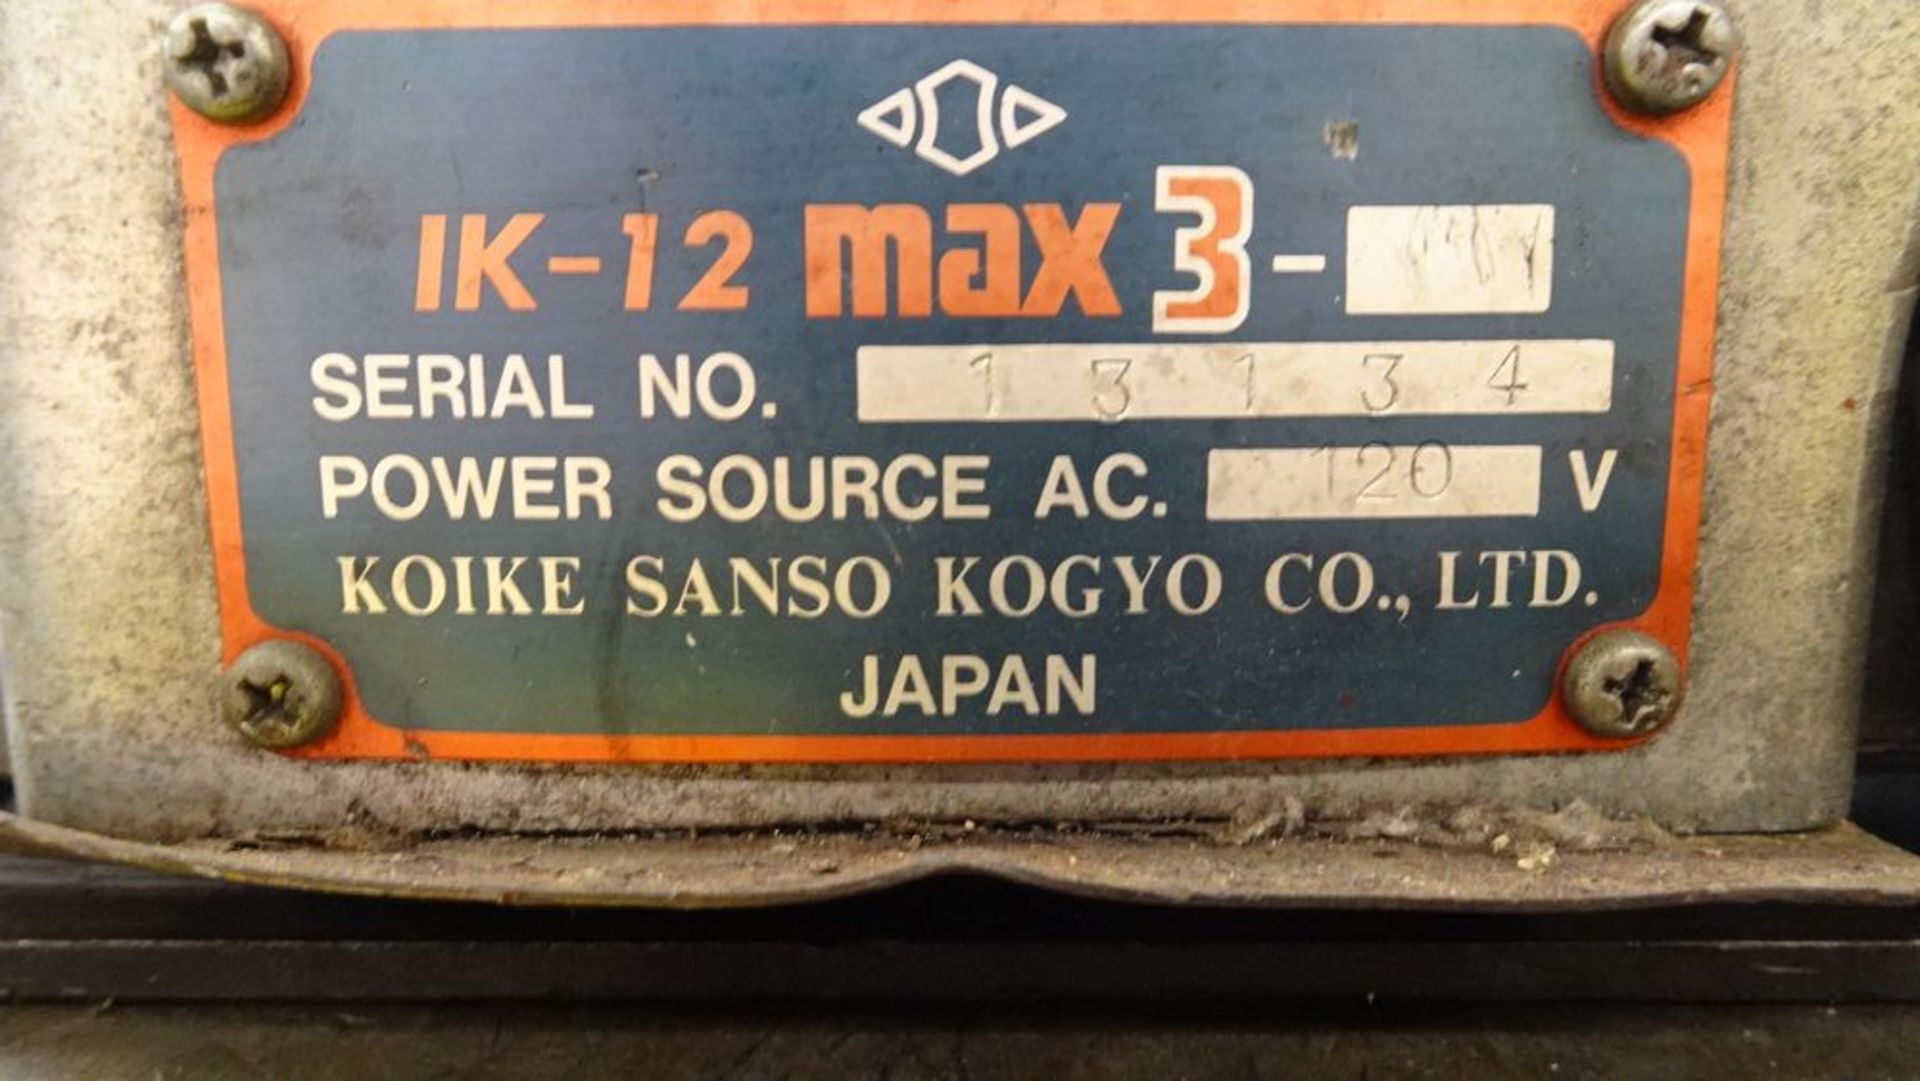 KOIKE IK-12 MAX 3 O/A TRACK CUTTER, 120V C/W (2) 8" LONG RAIL TRACKS, S/N 13134 - Image 3 of 5